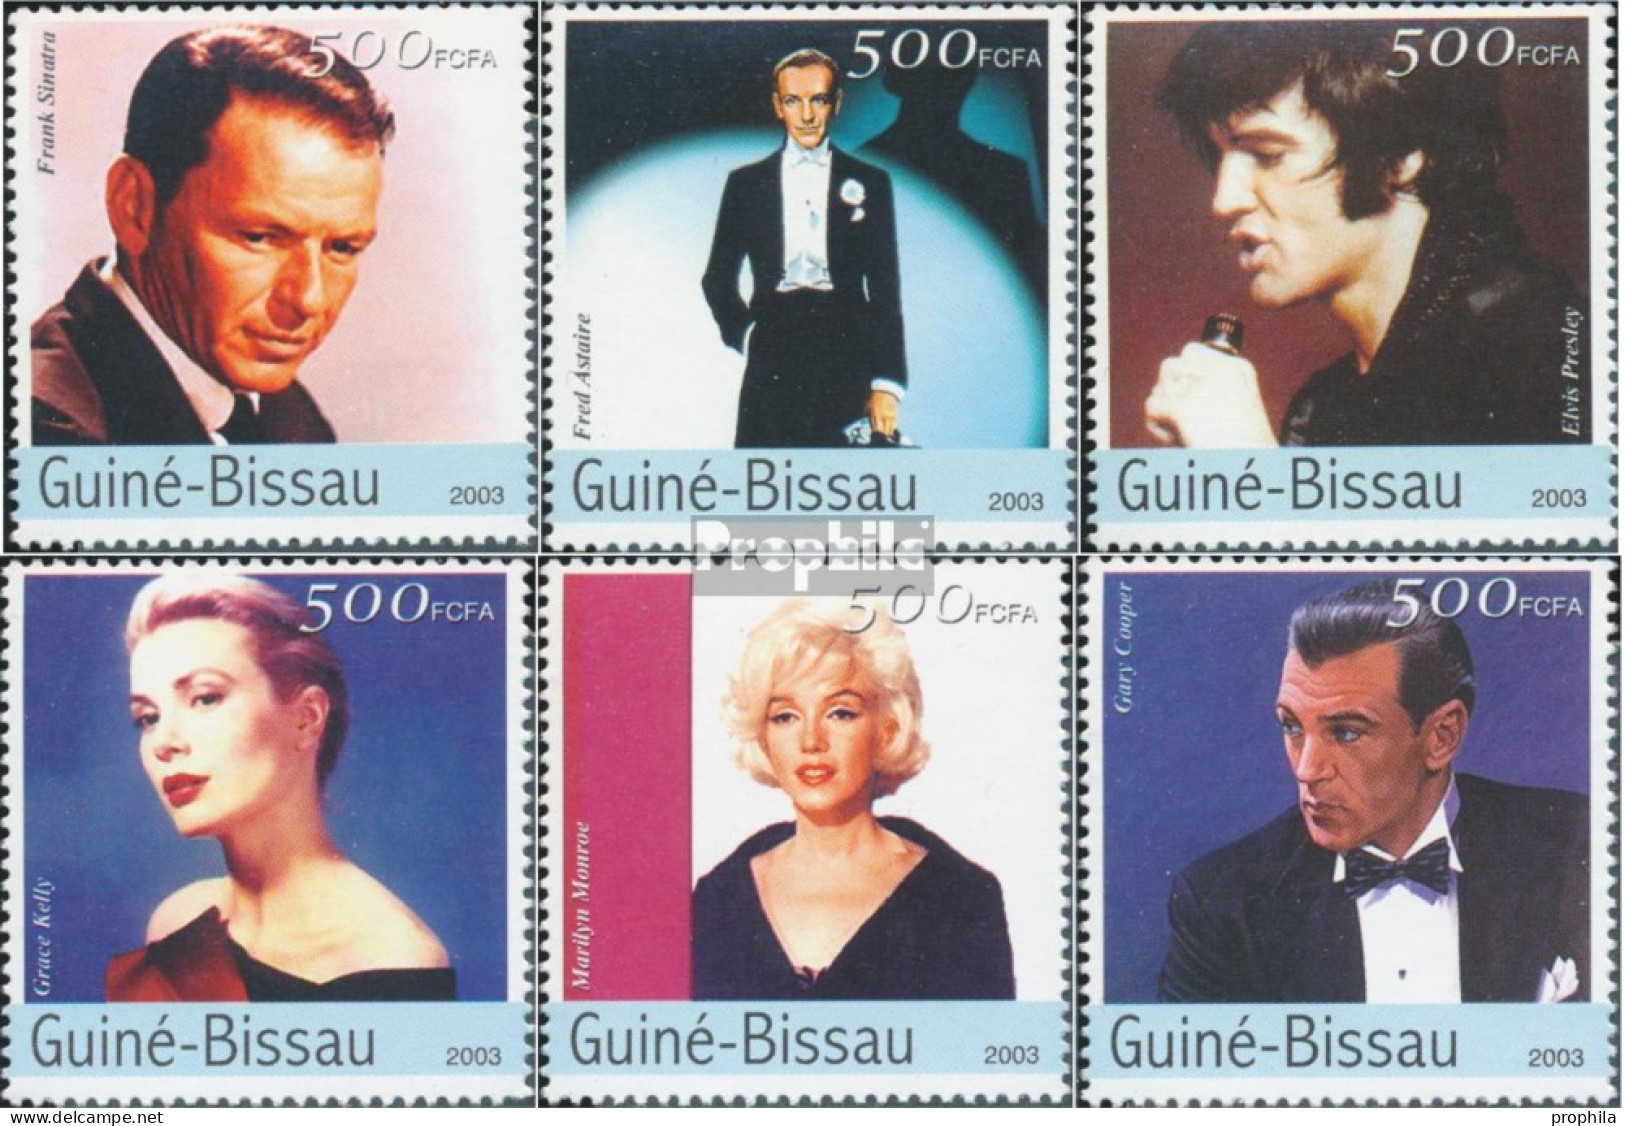 Guinea-Bissau 2608-2613 (kompl. Ausgabe) Postfrisch 2003 Kino - Schauspieler - Guinée-Bissau